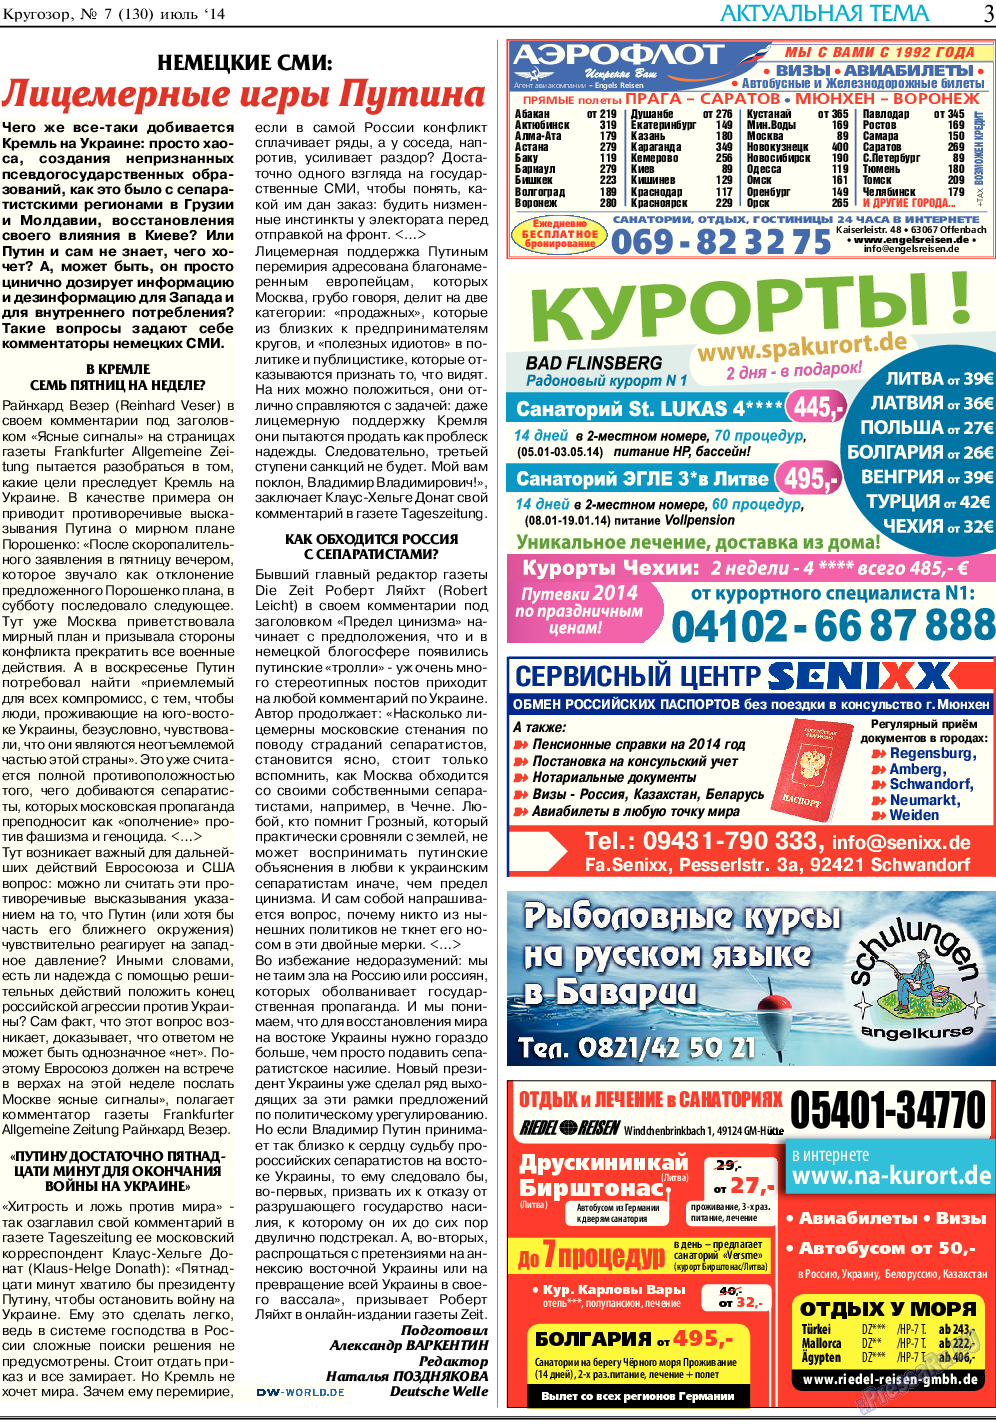 Кругозор, газета. 2014 №7 стр.3